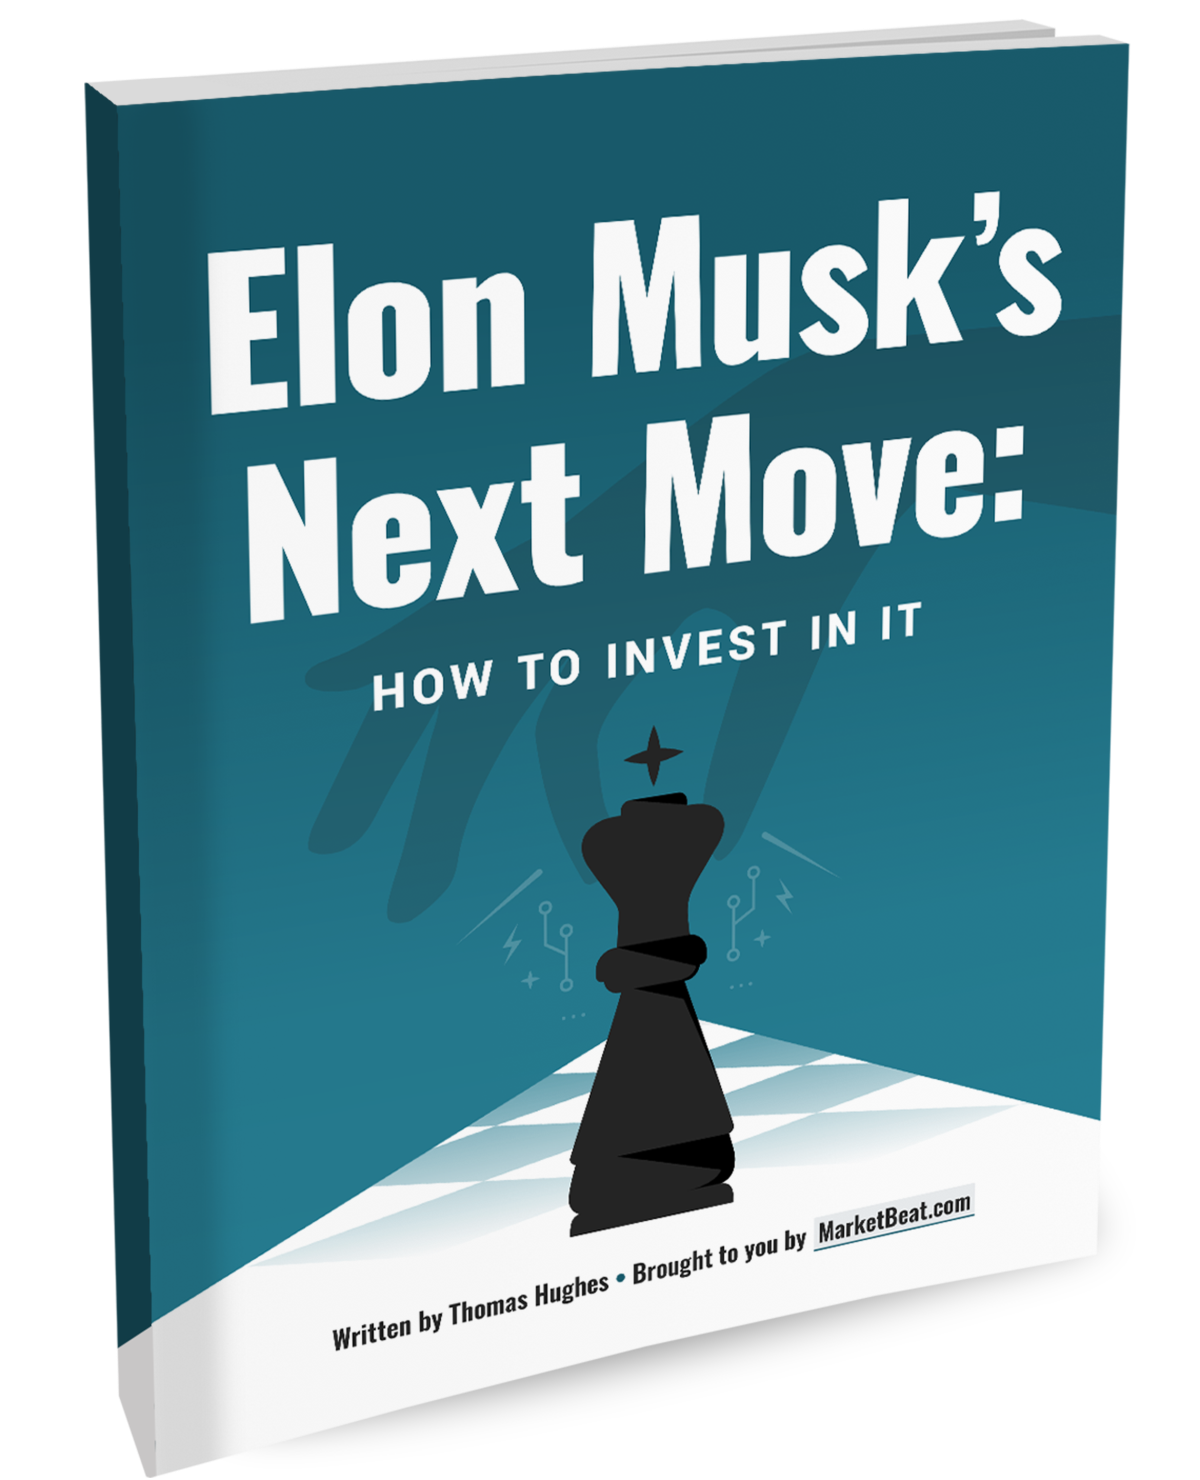 Couverture Next Move d'Elon Musk